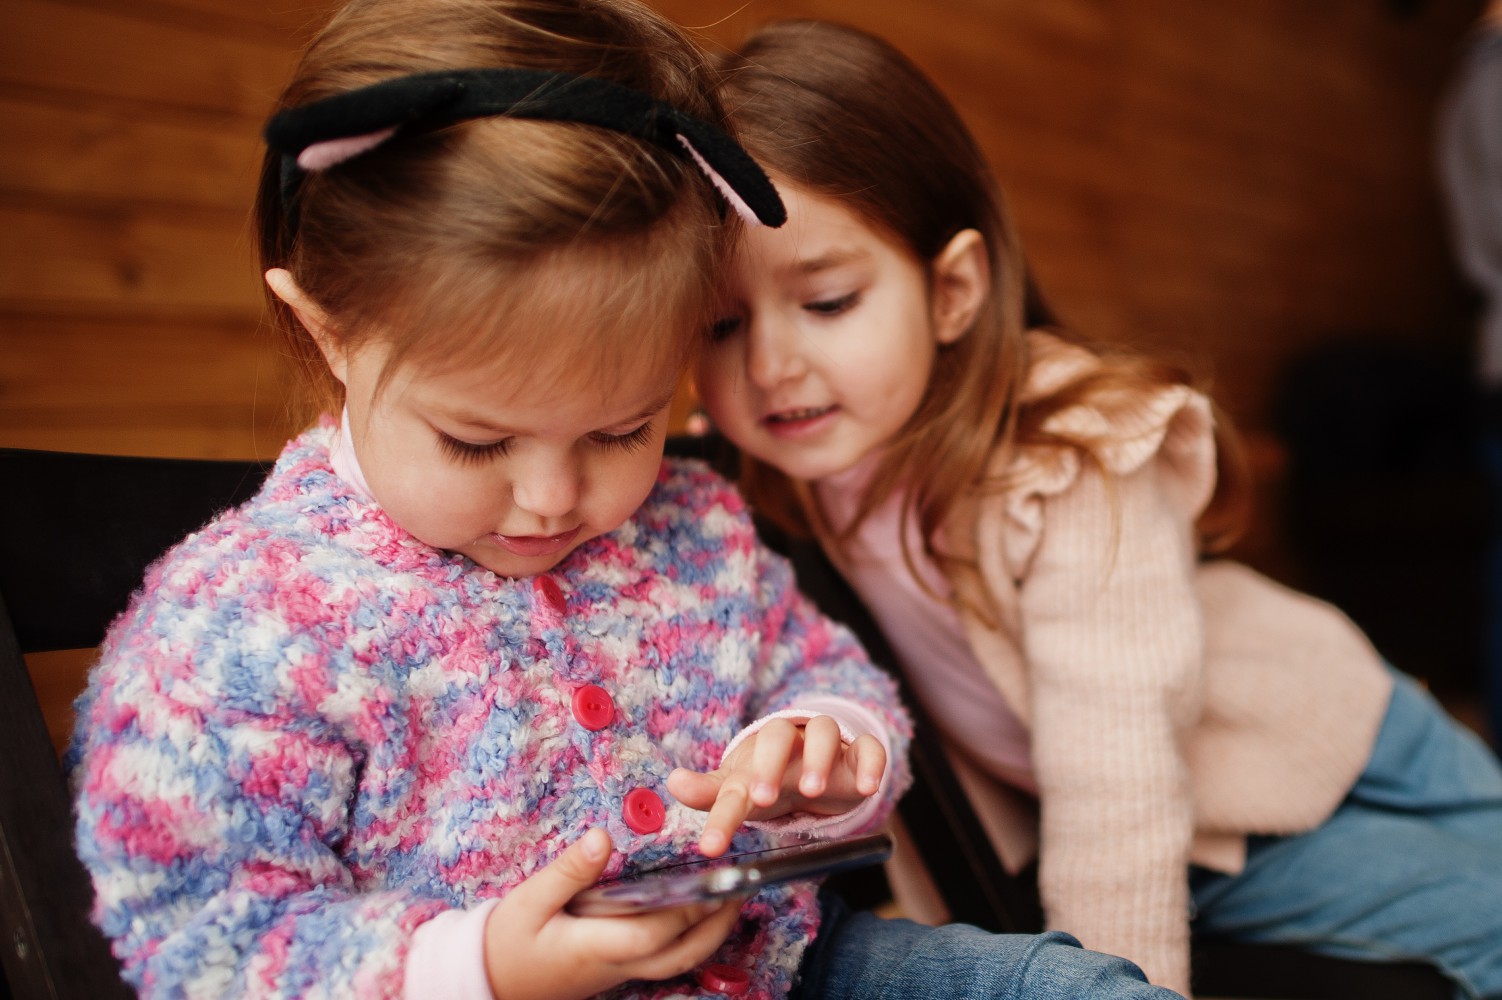 اثرات نامطلوب تلویزیون و تلفن همراه بر رشد گفتار و زبان در نوزادان